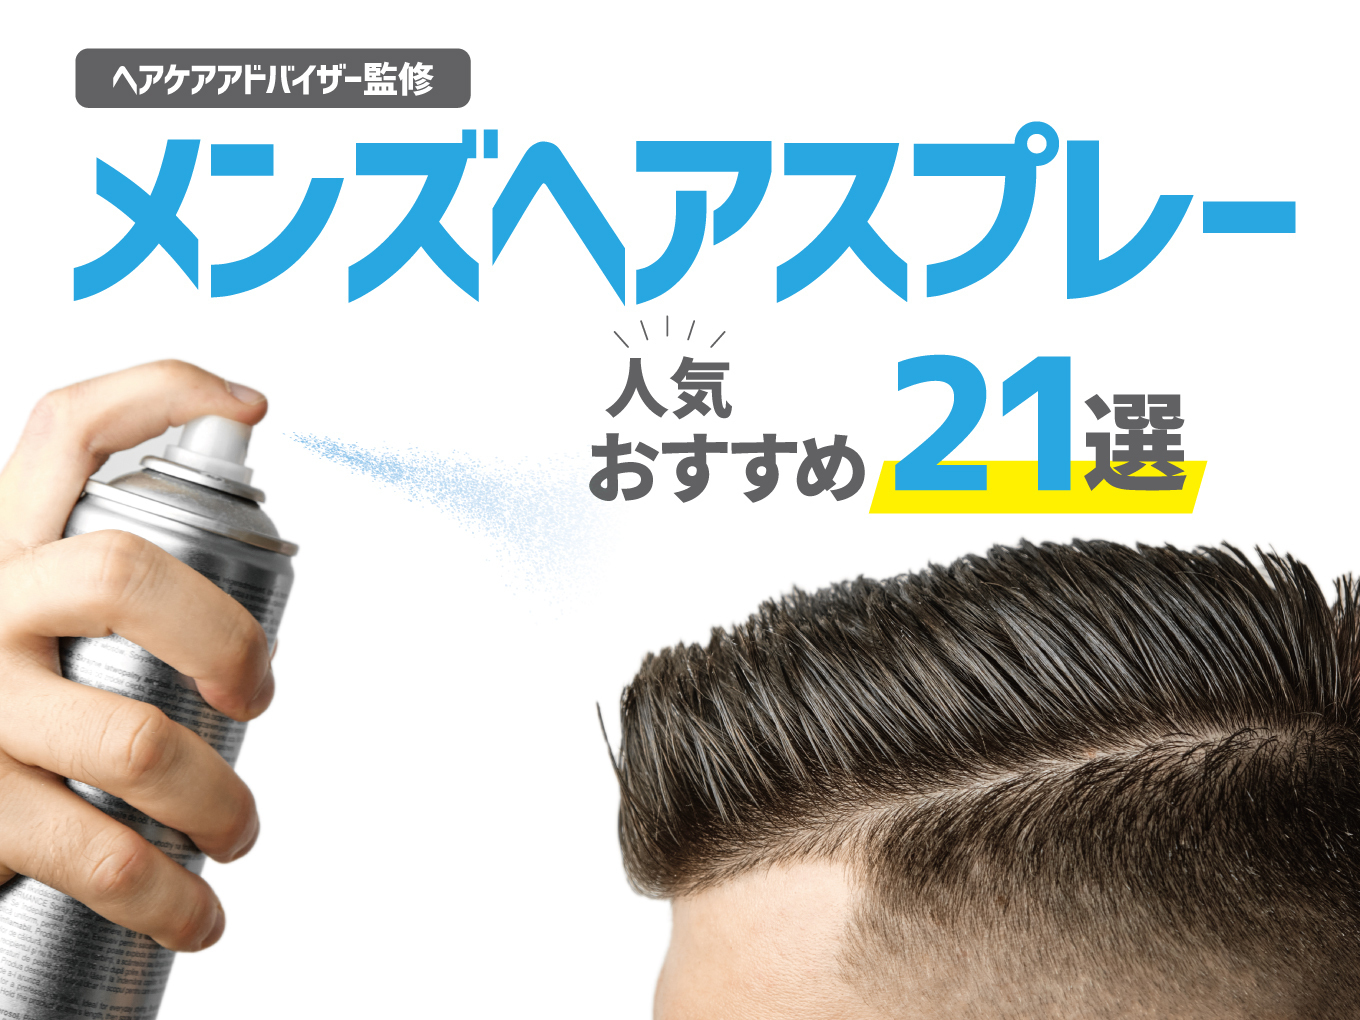 メンズヘアスプレー人気おすすめ21選 ハード ソフト別 ベタつかない しっかり固める マイナビおすすめナビ